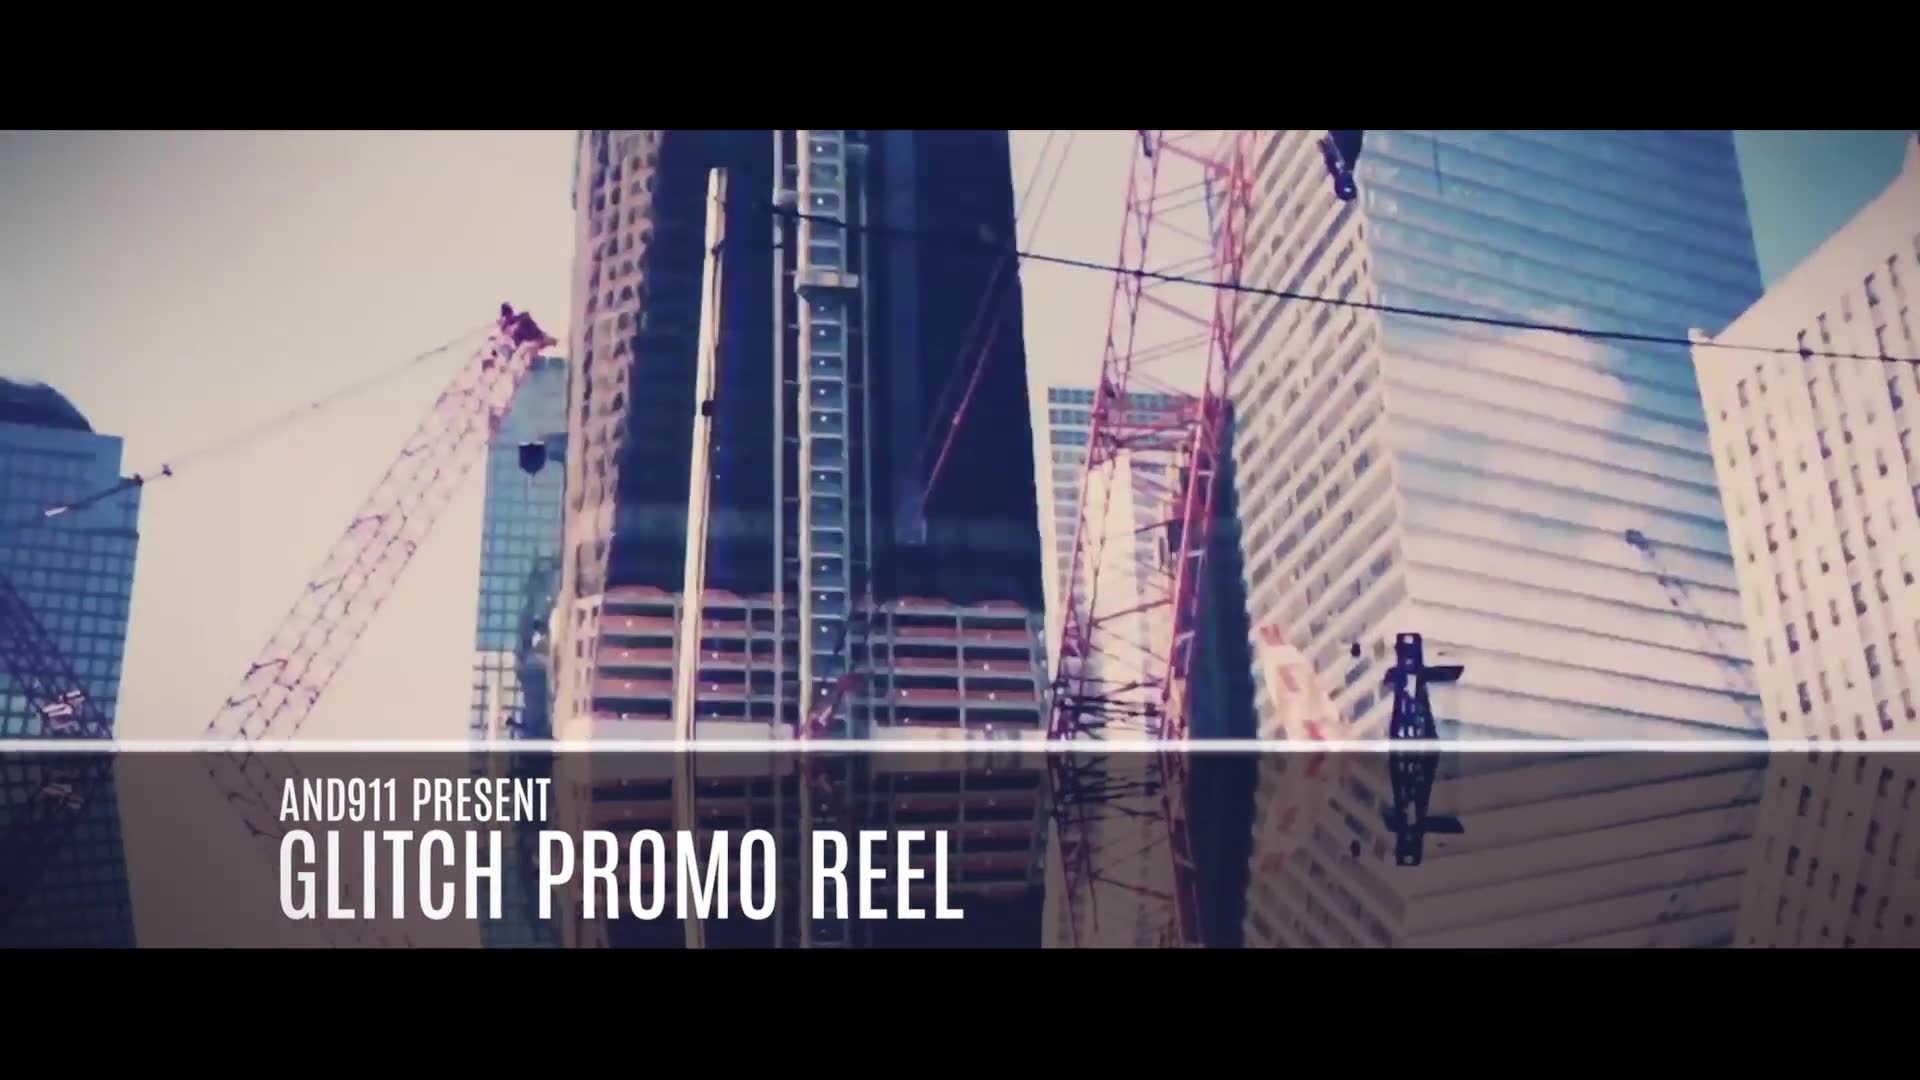 Glitch Promo Reel Videohive 23267076 Premiere Pro Image 3